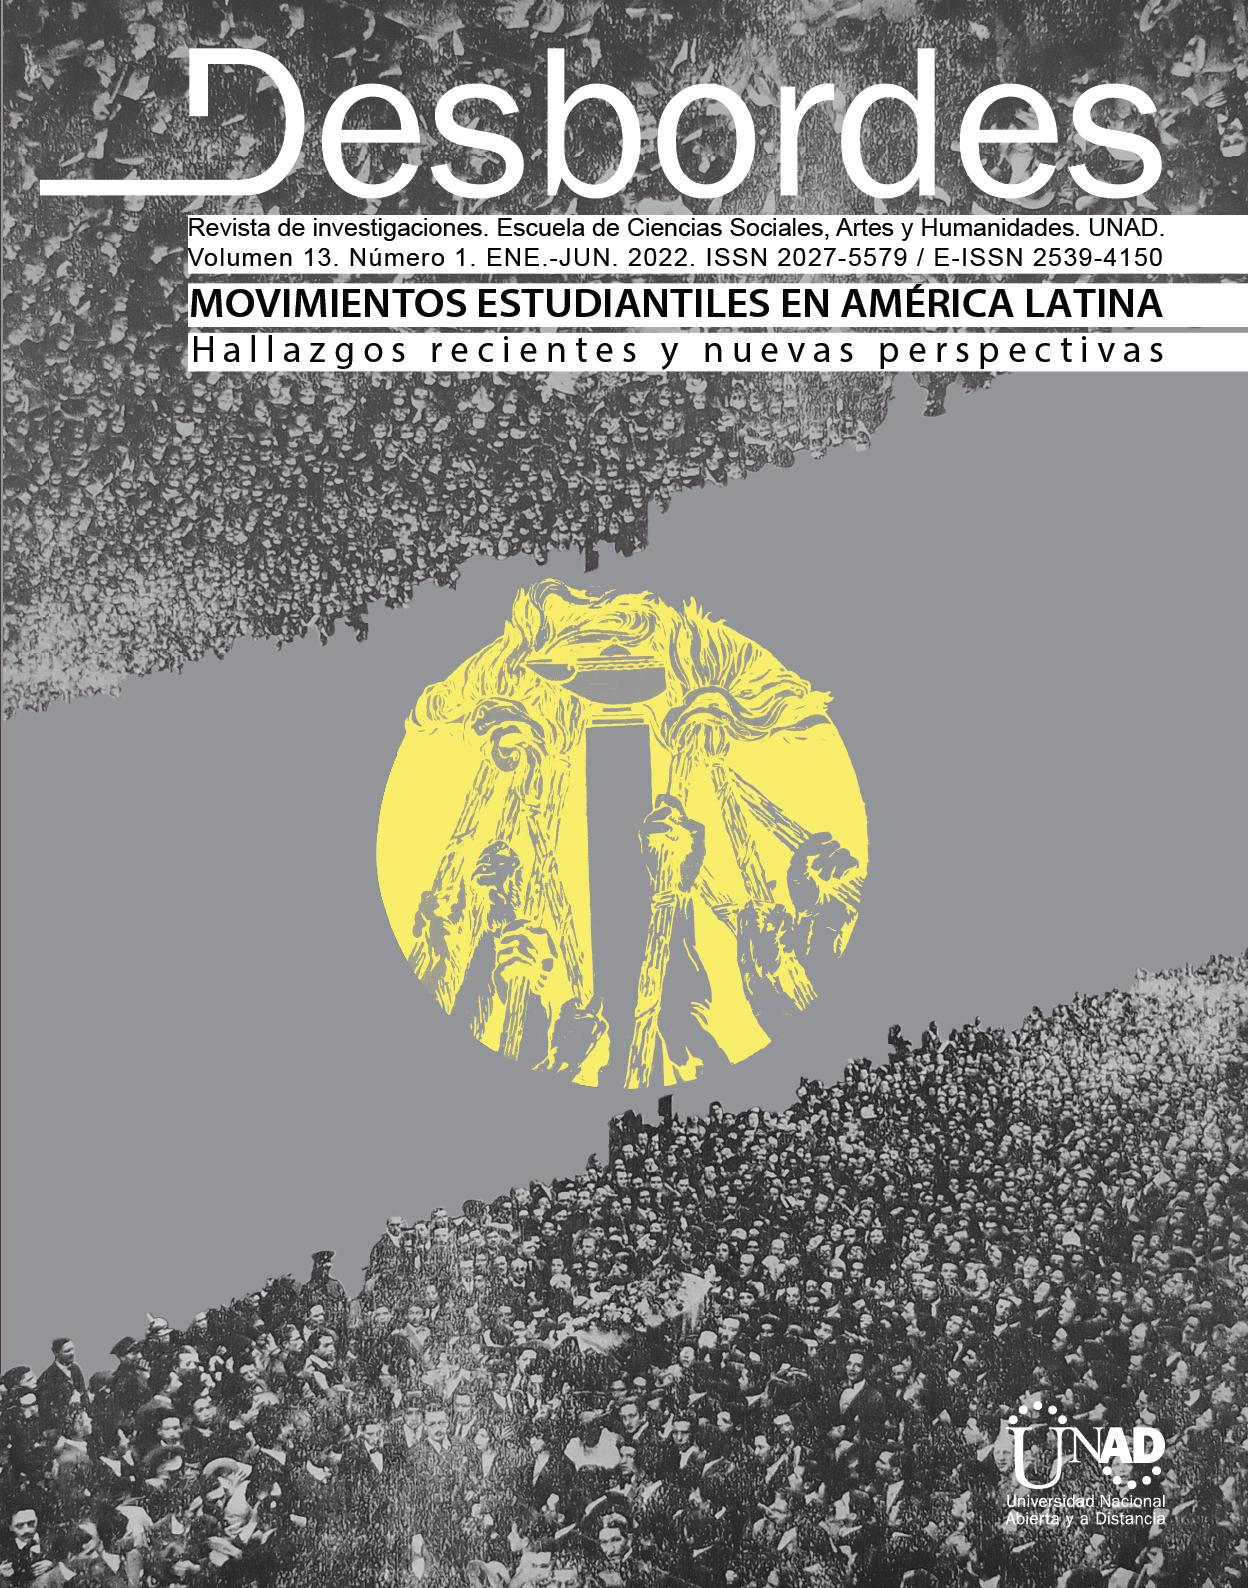 					Ver Vol. 13 Núm. 2 (2022): Movimientos estudiantiles en América Latina: hallazgos recientes y nuevas perspectivas
				